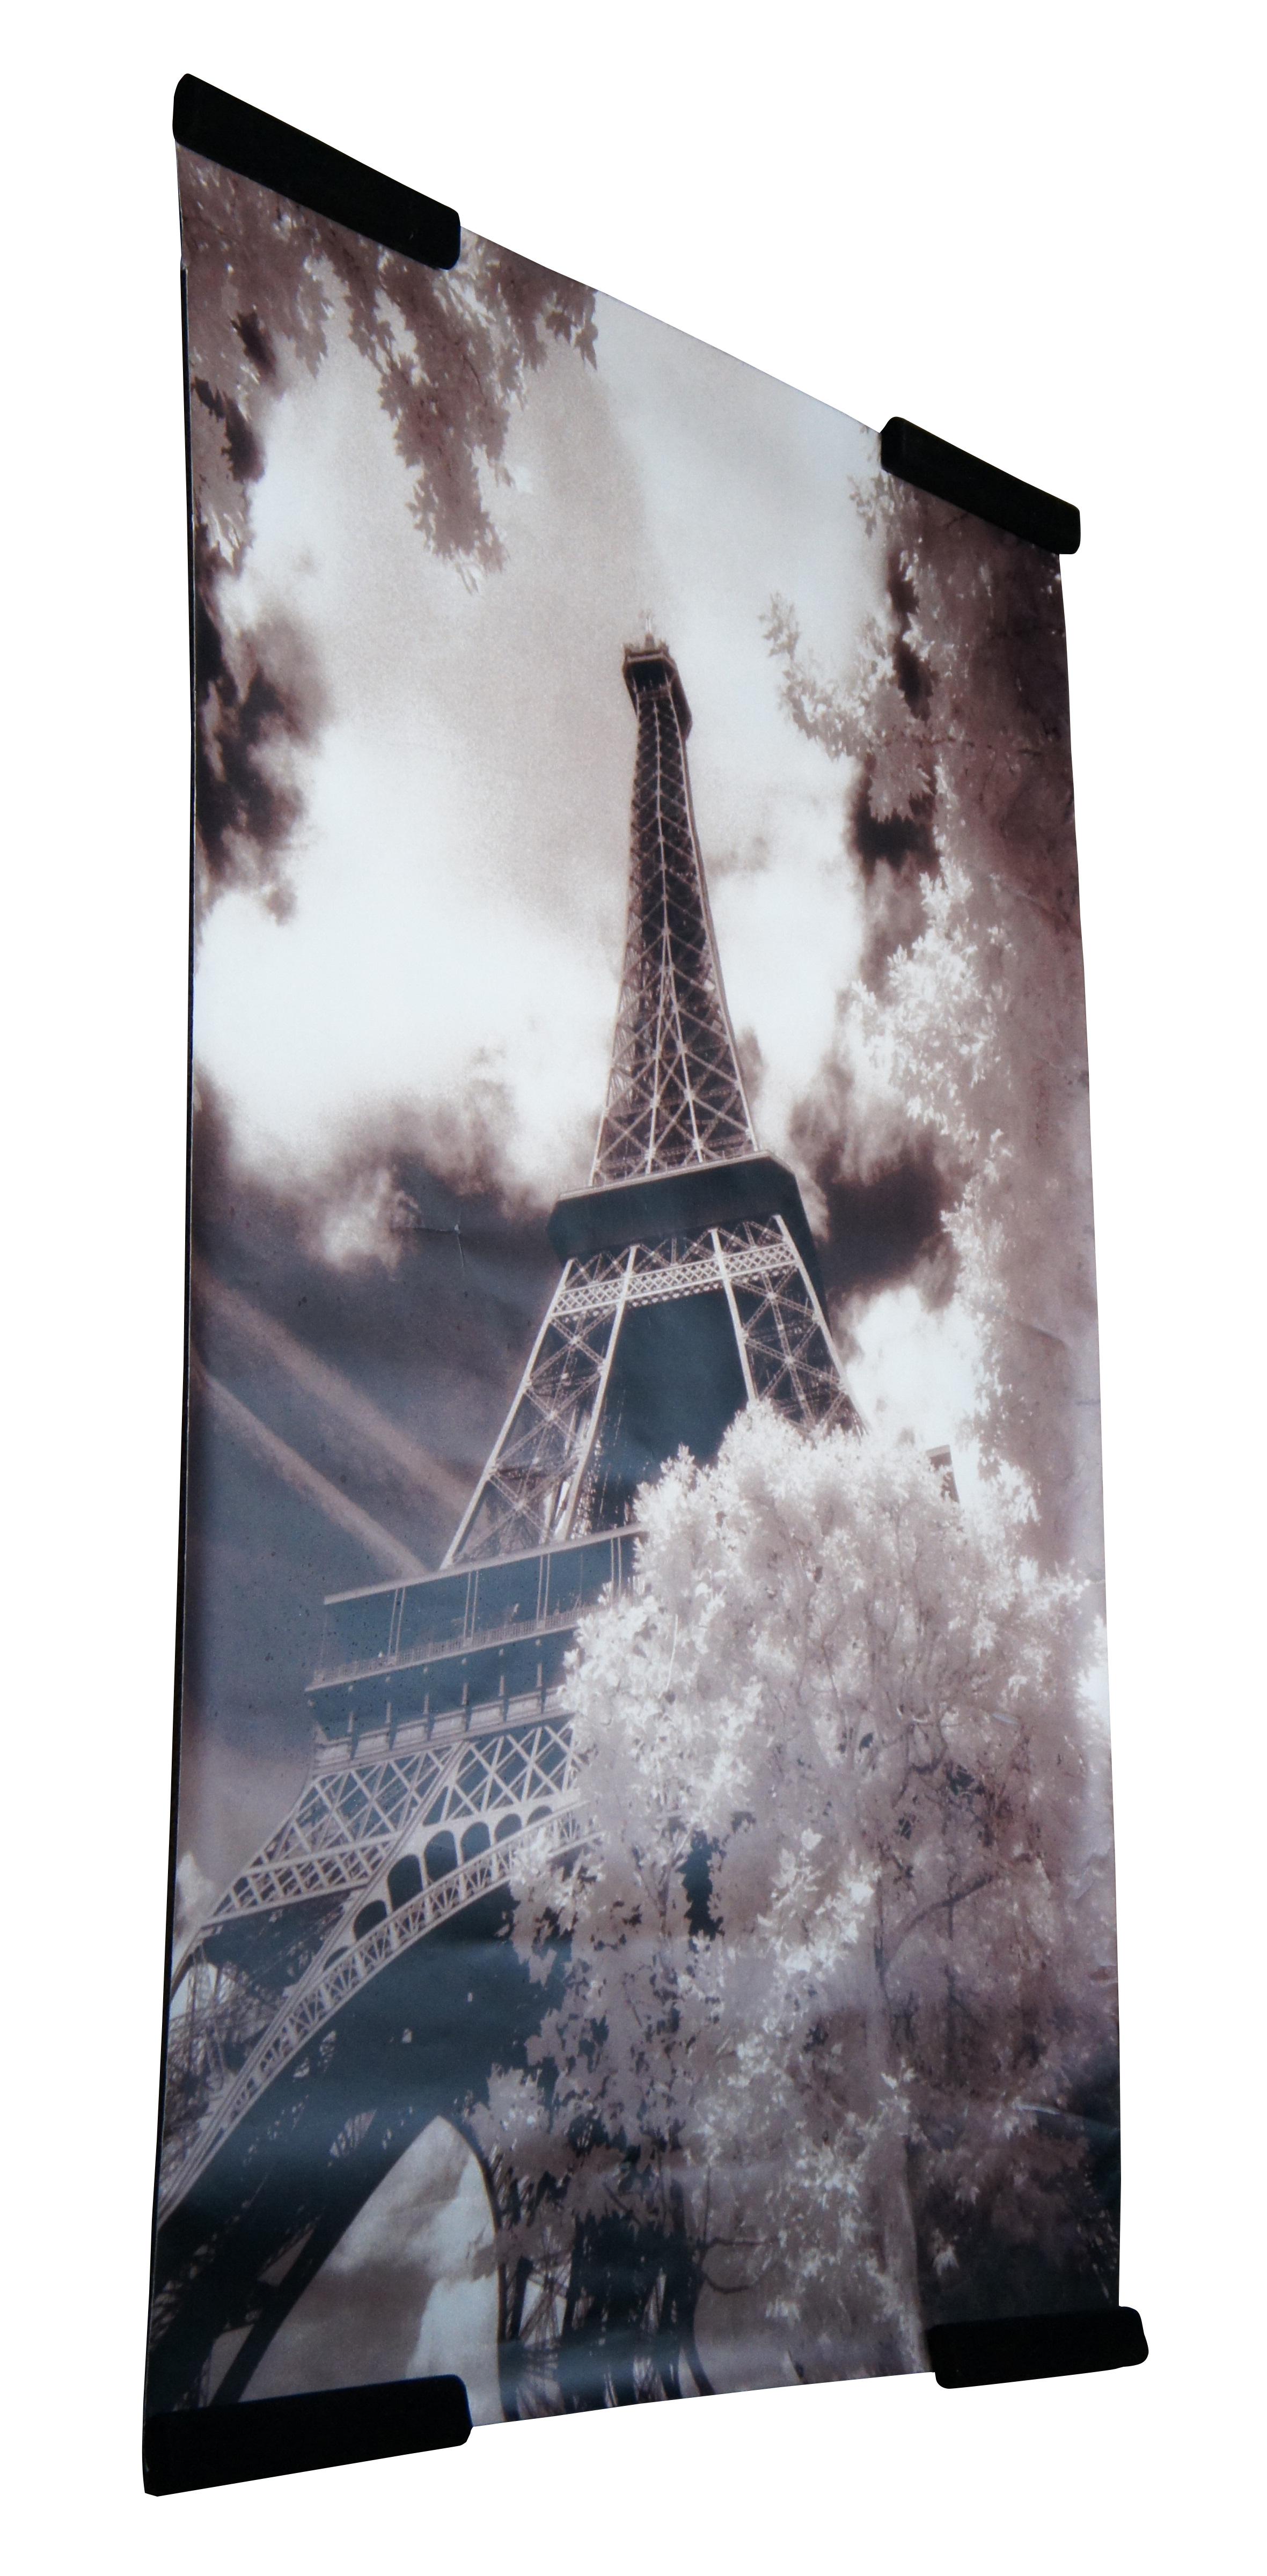 Riesiges sepiafarbenes Poster des Eiffelturms, der durch die Bäume des Champ de Mars blickt, von Jon Arnold.  Gedruckt auf Fujicolor Crystal Archive Papier von Fujifilm.

Jon Arnolds Leidenschaft gilt der Fotografie, seit er mit 15 Jahren in einem